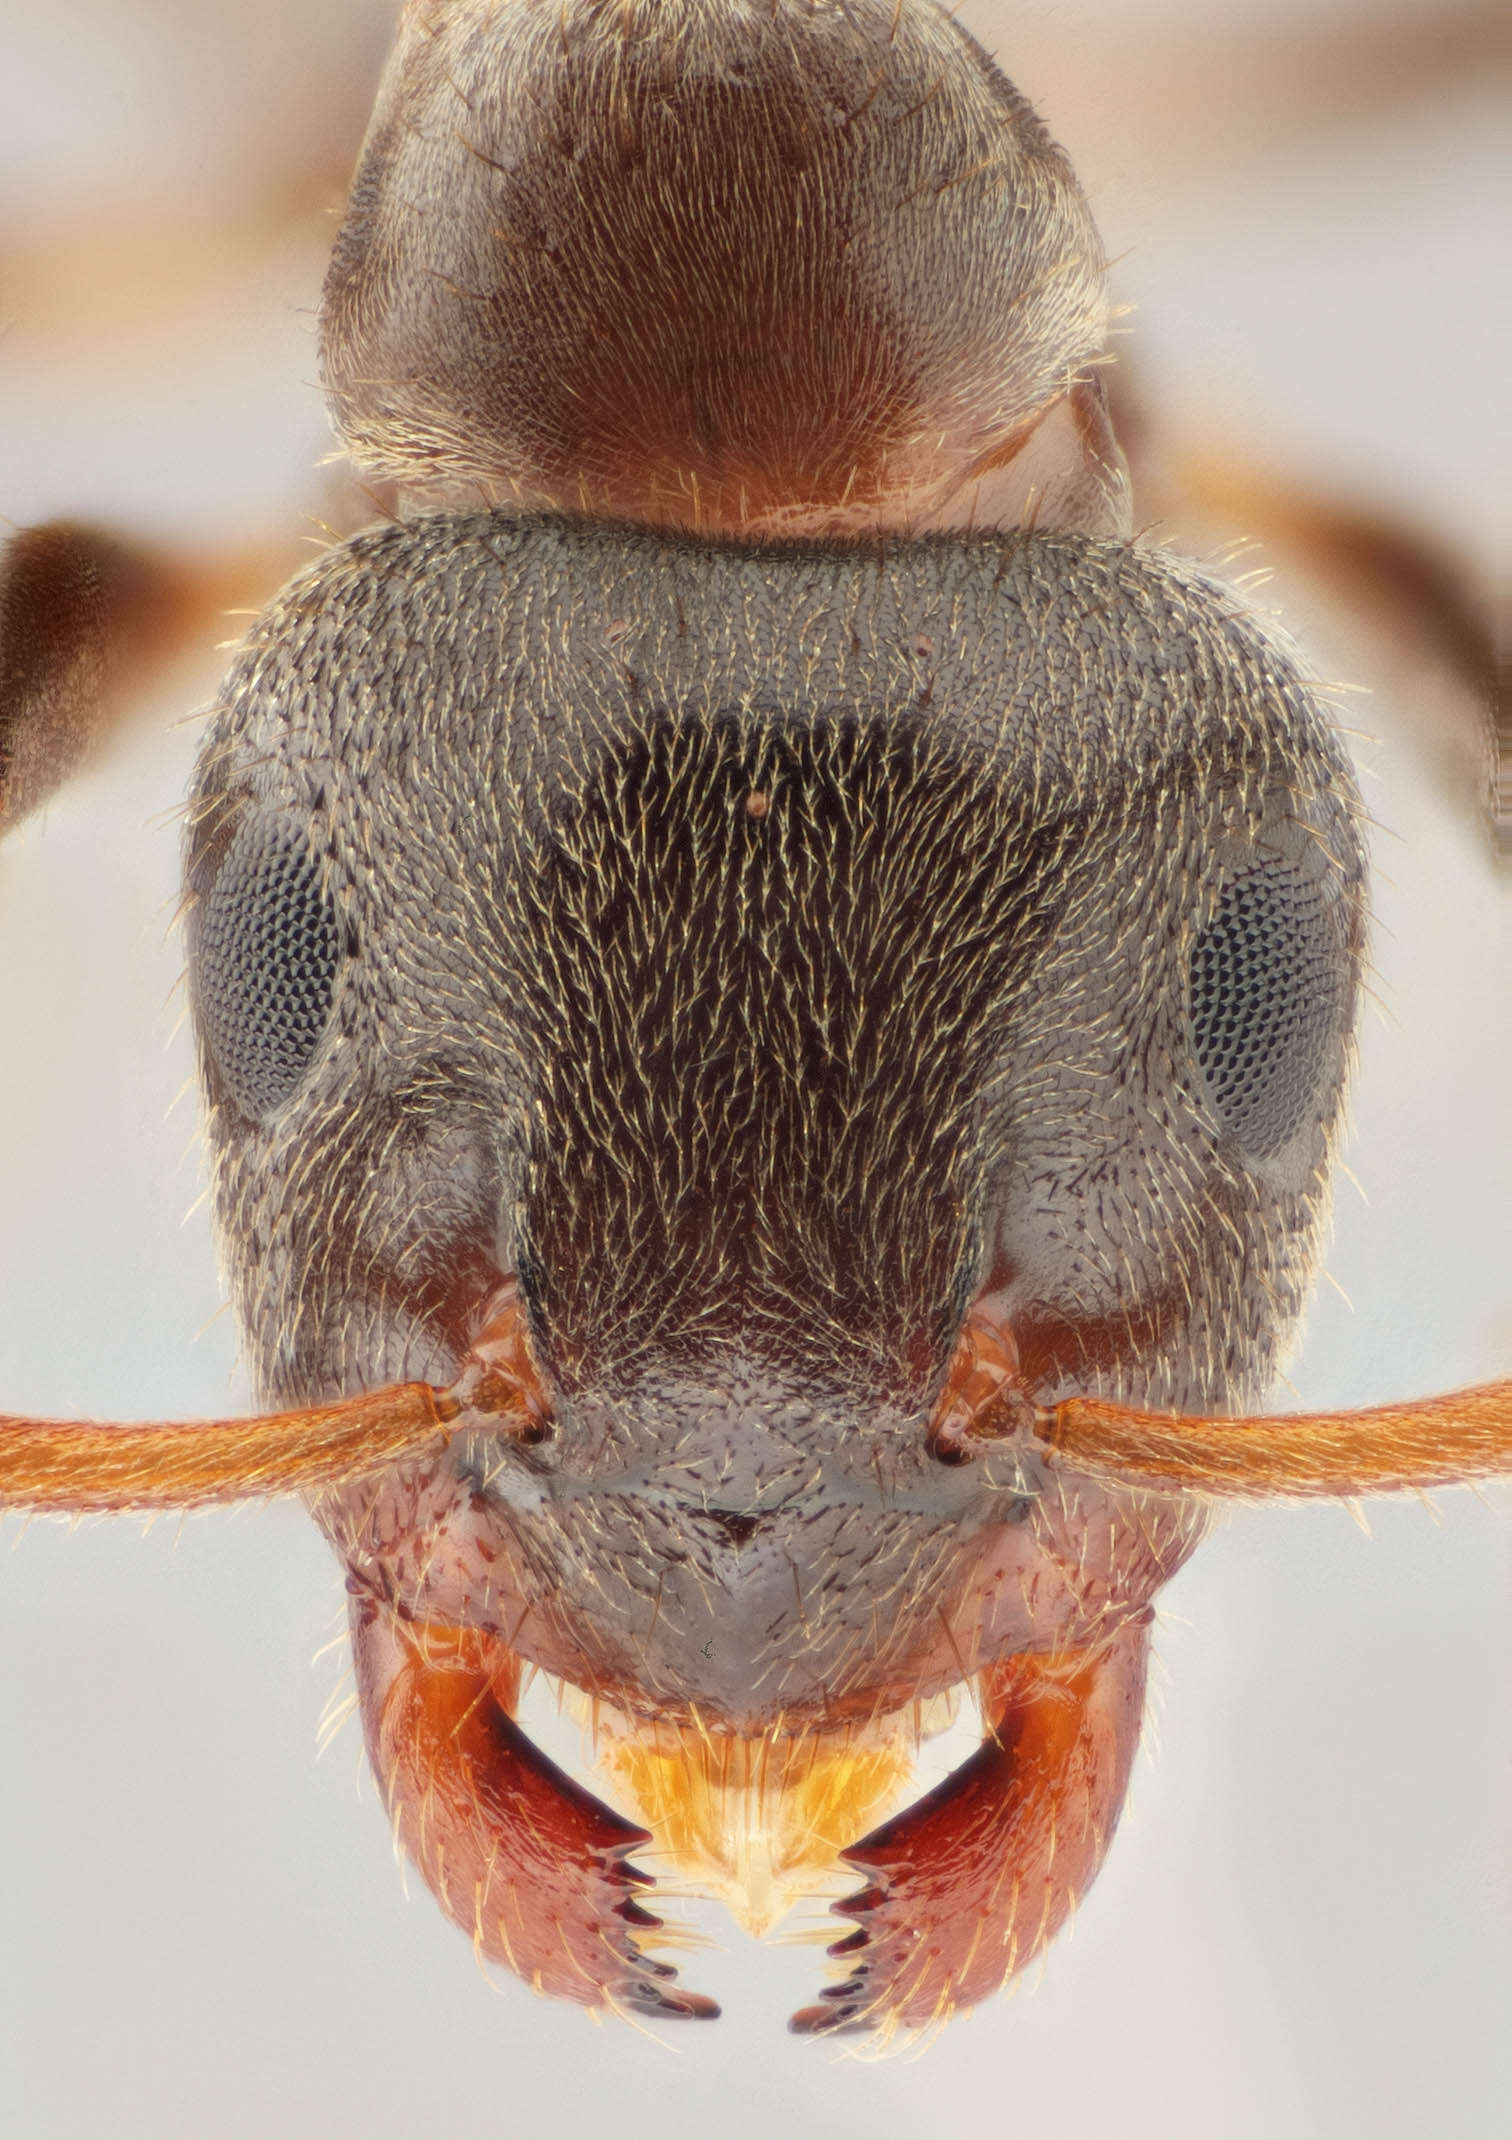 Image de fourmi noire des jardins